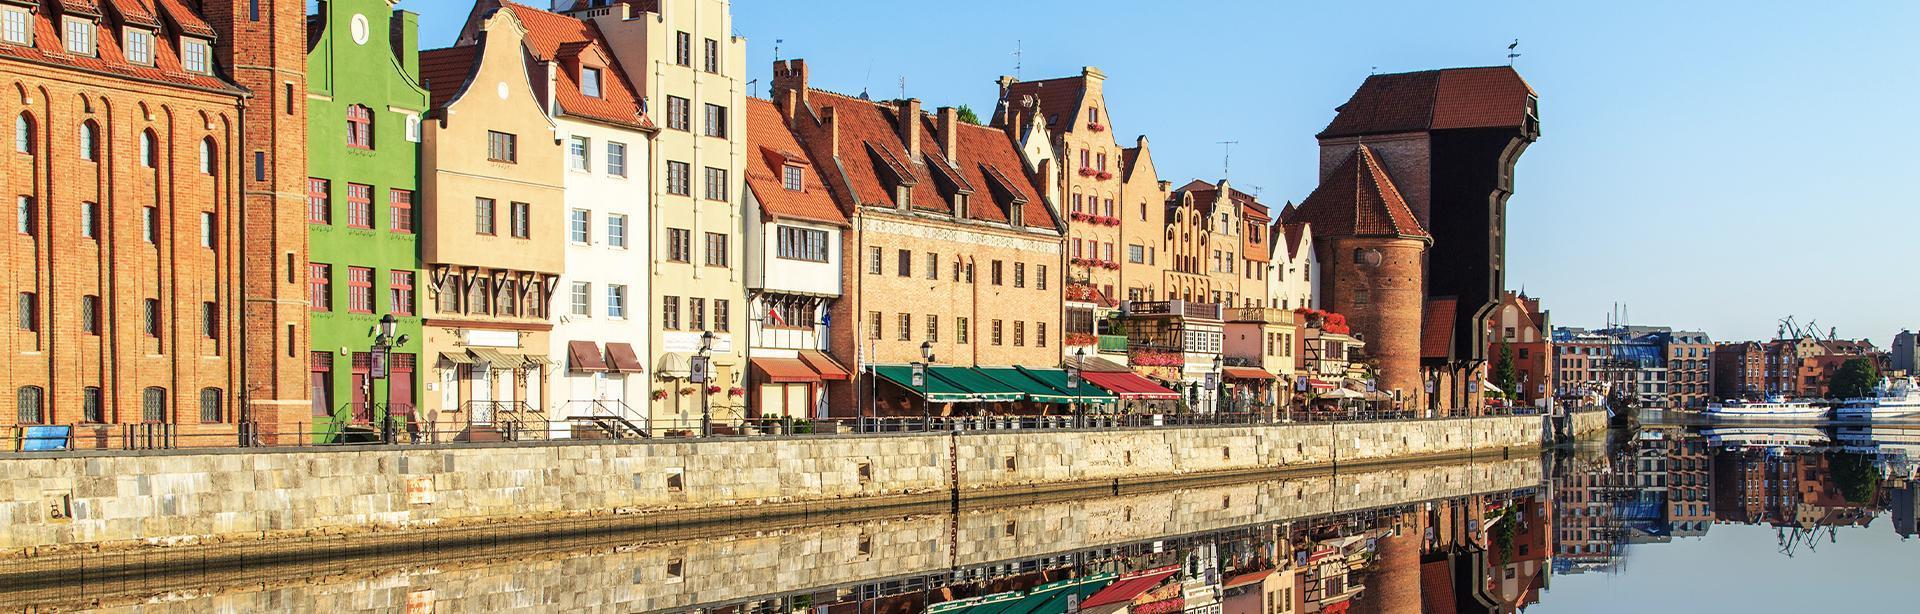 Stare miasto Gdańsk Slajd #3